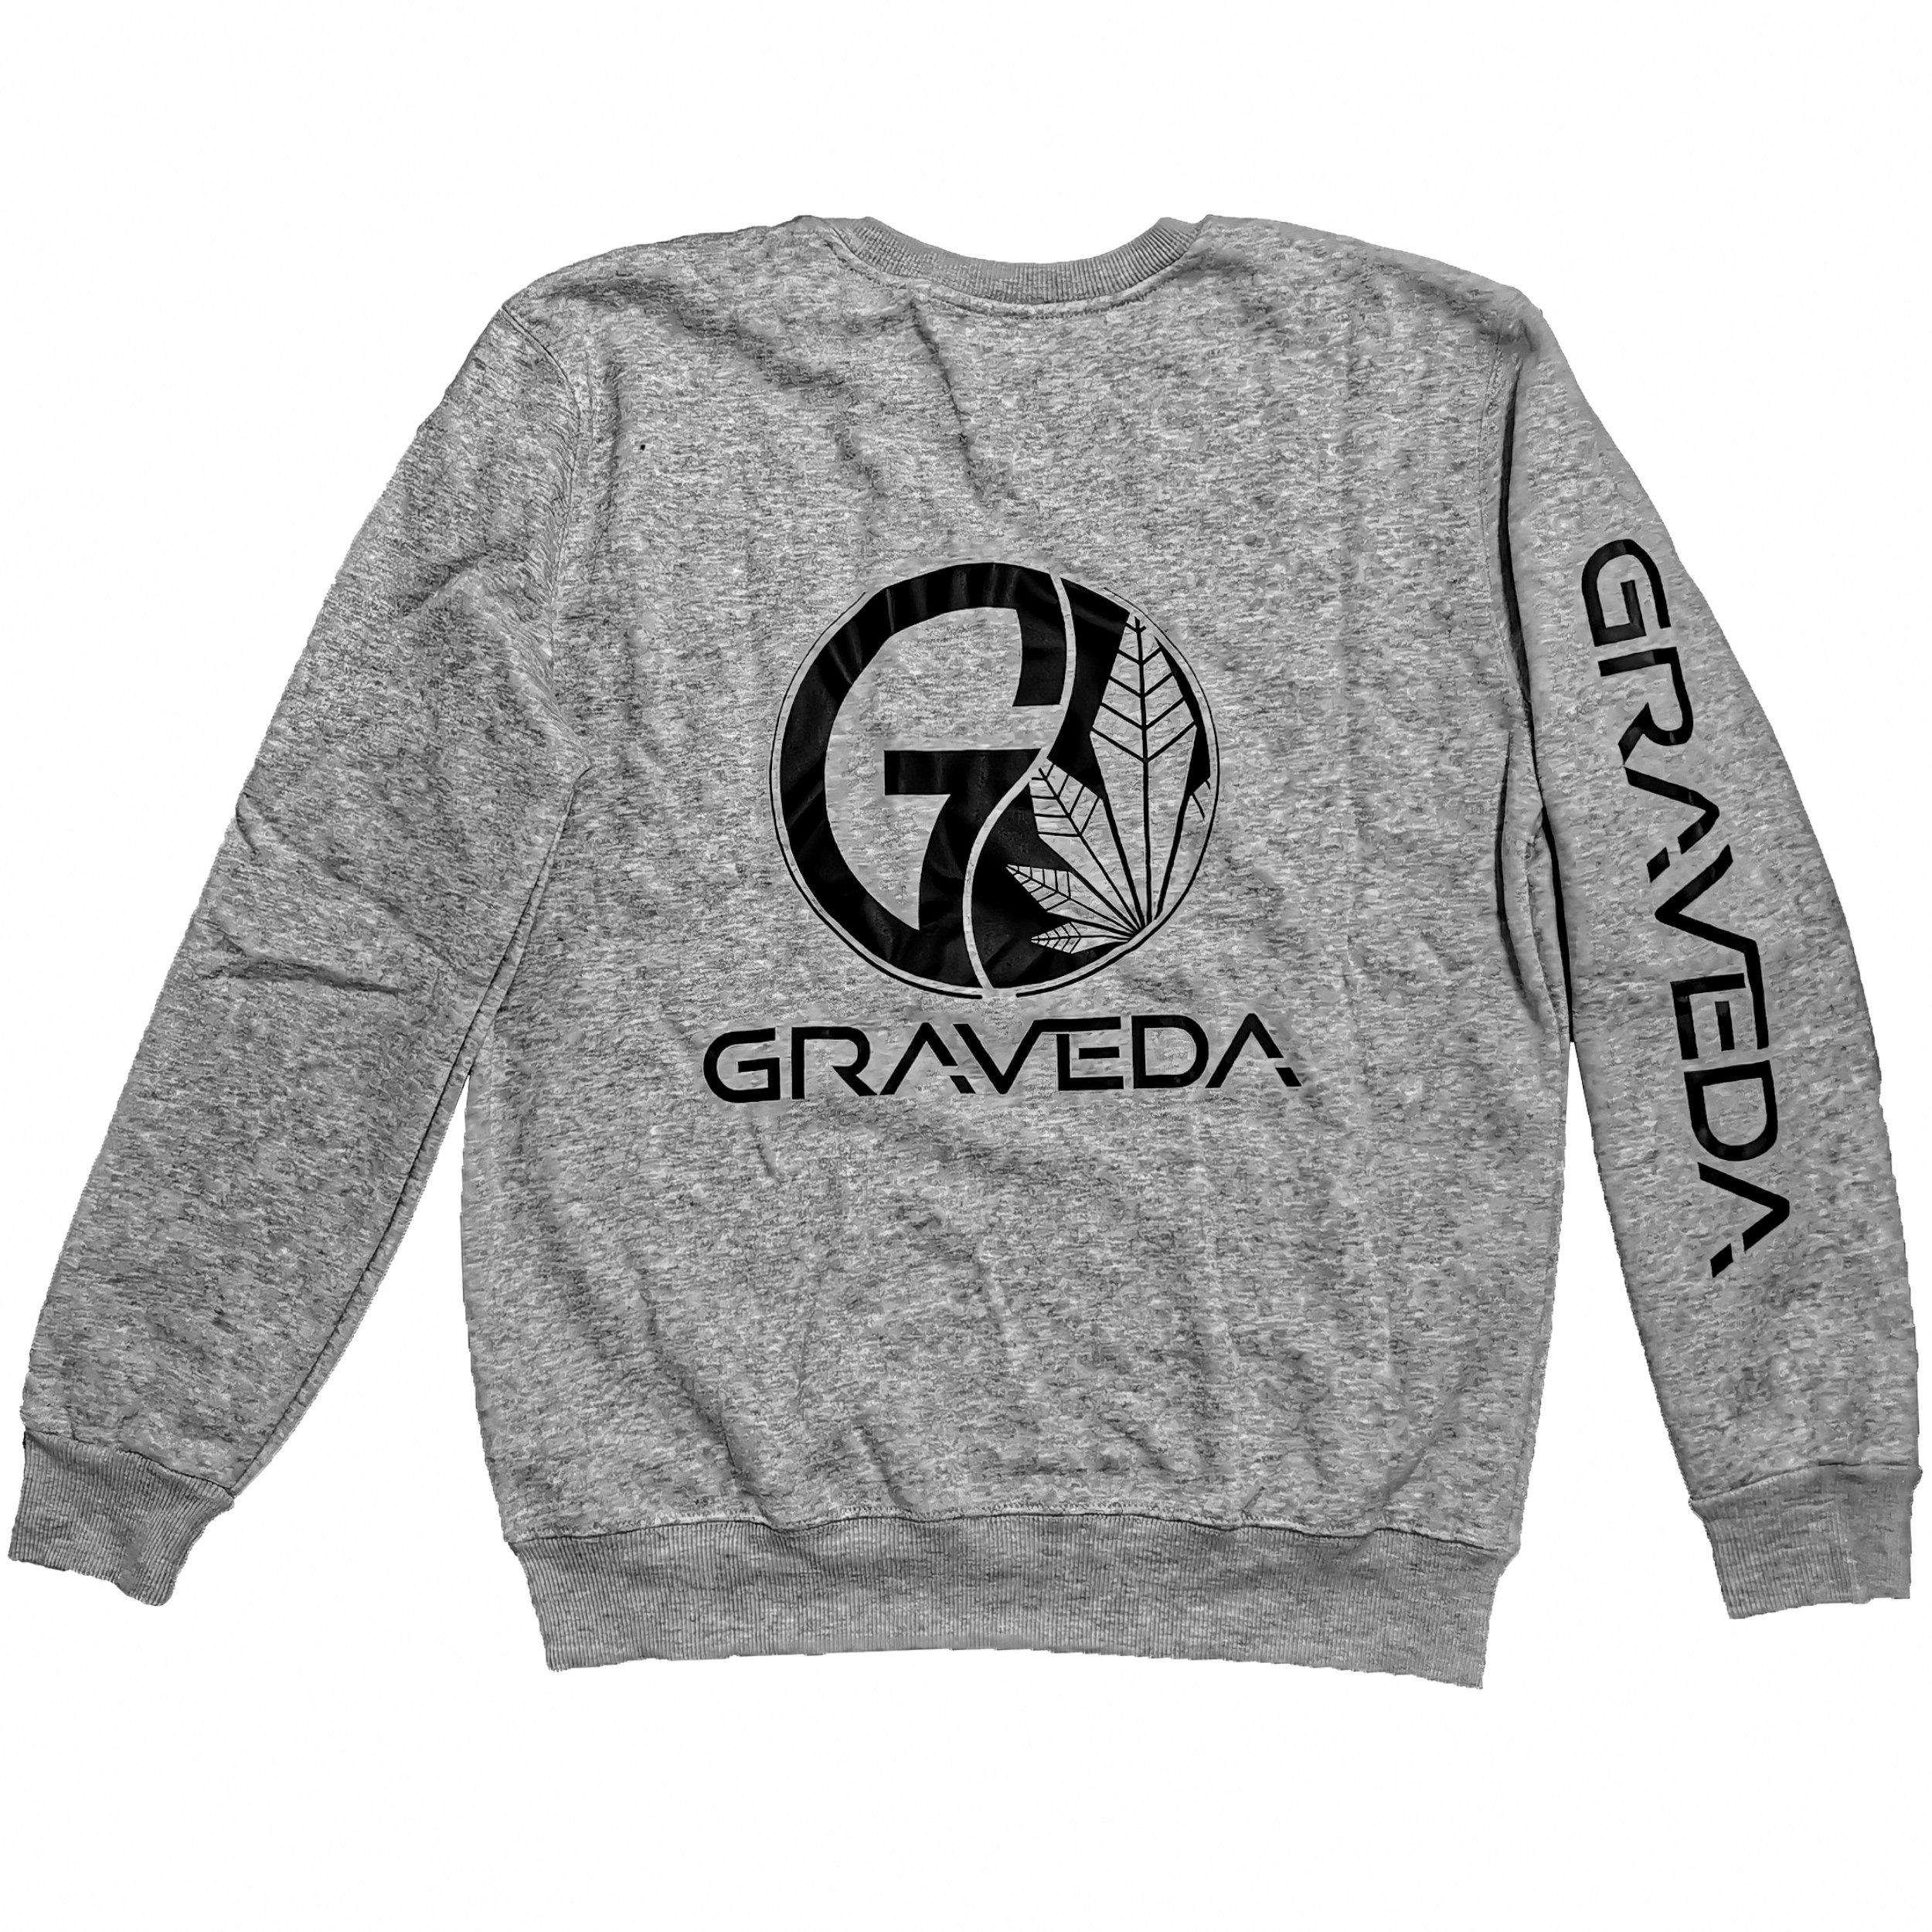 Graveda Premium Sweatshirt, 420g/m², in schwarz oder grau grau XS